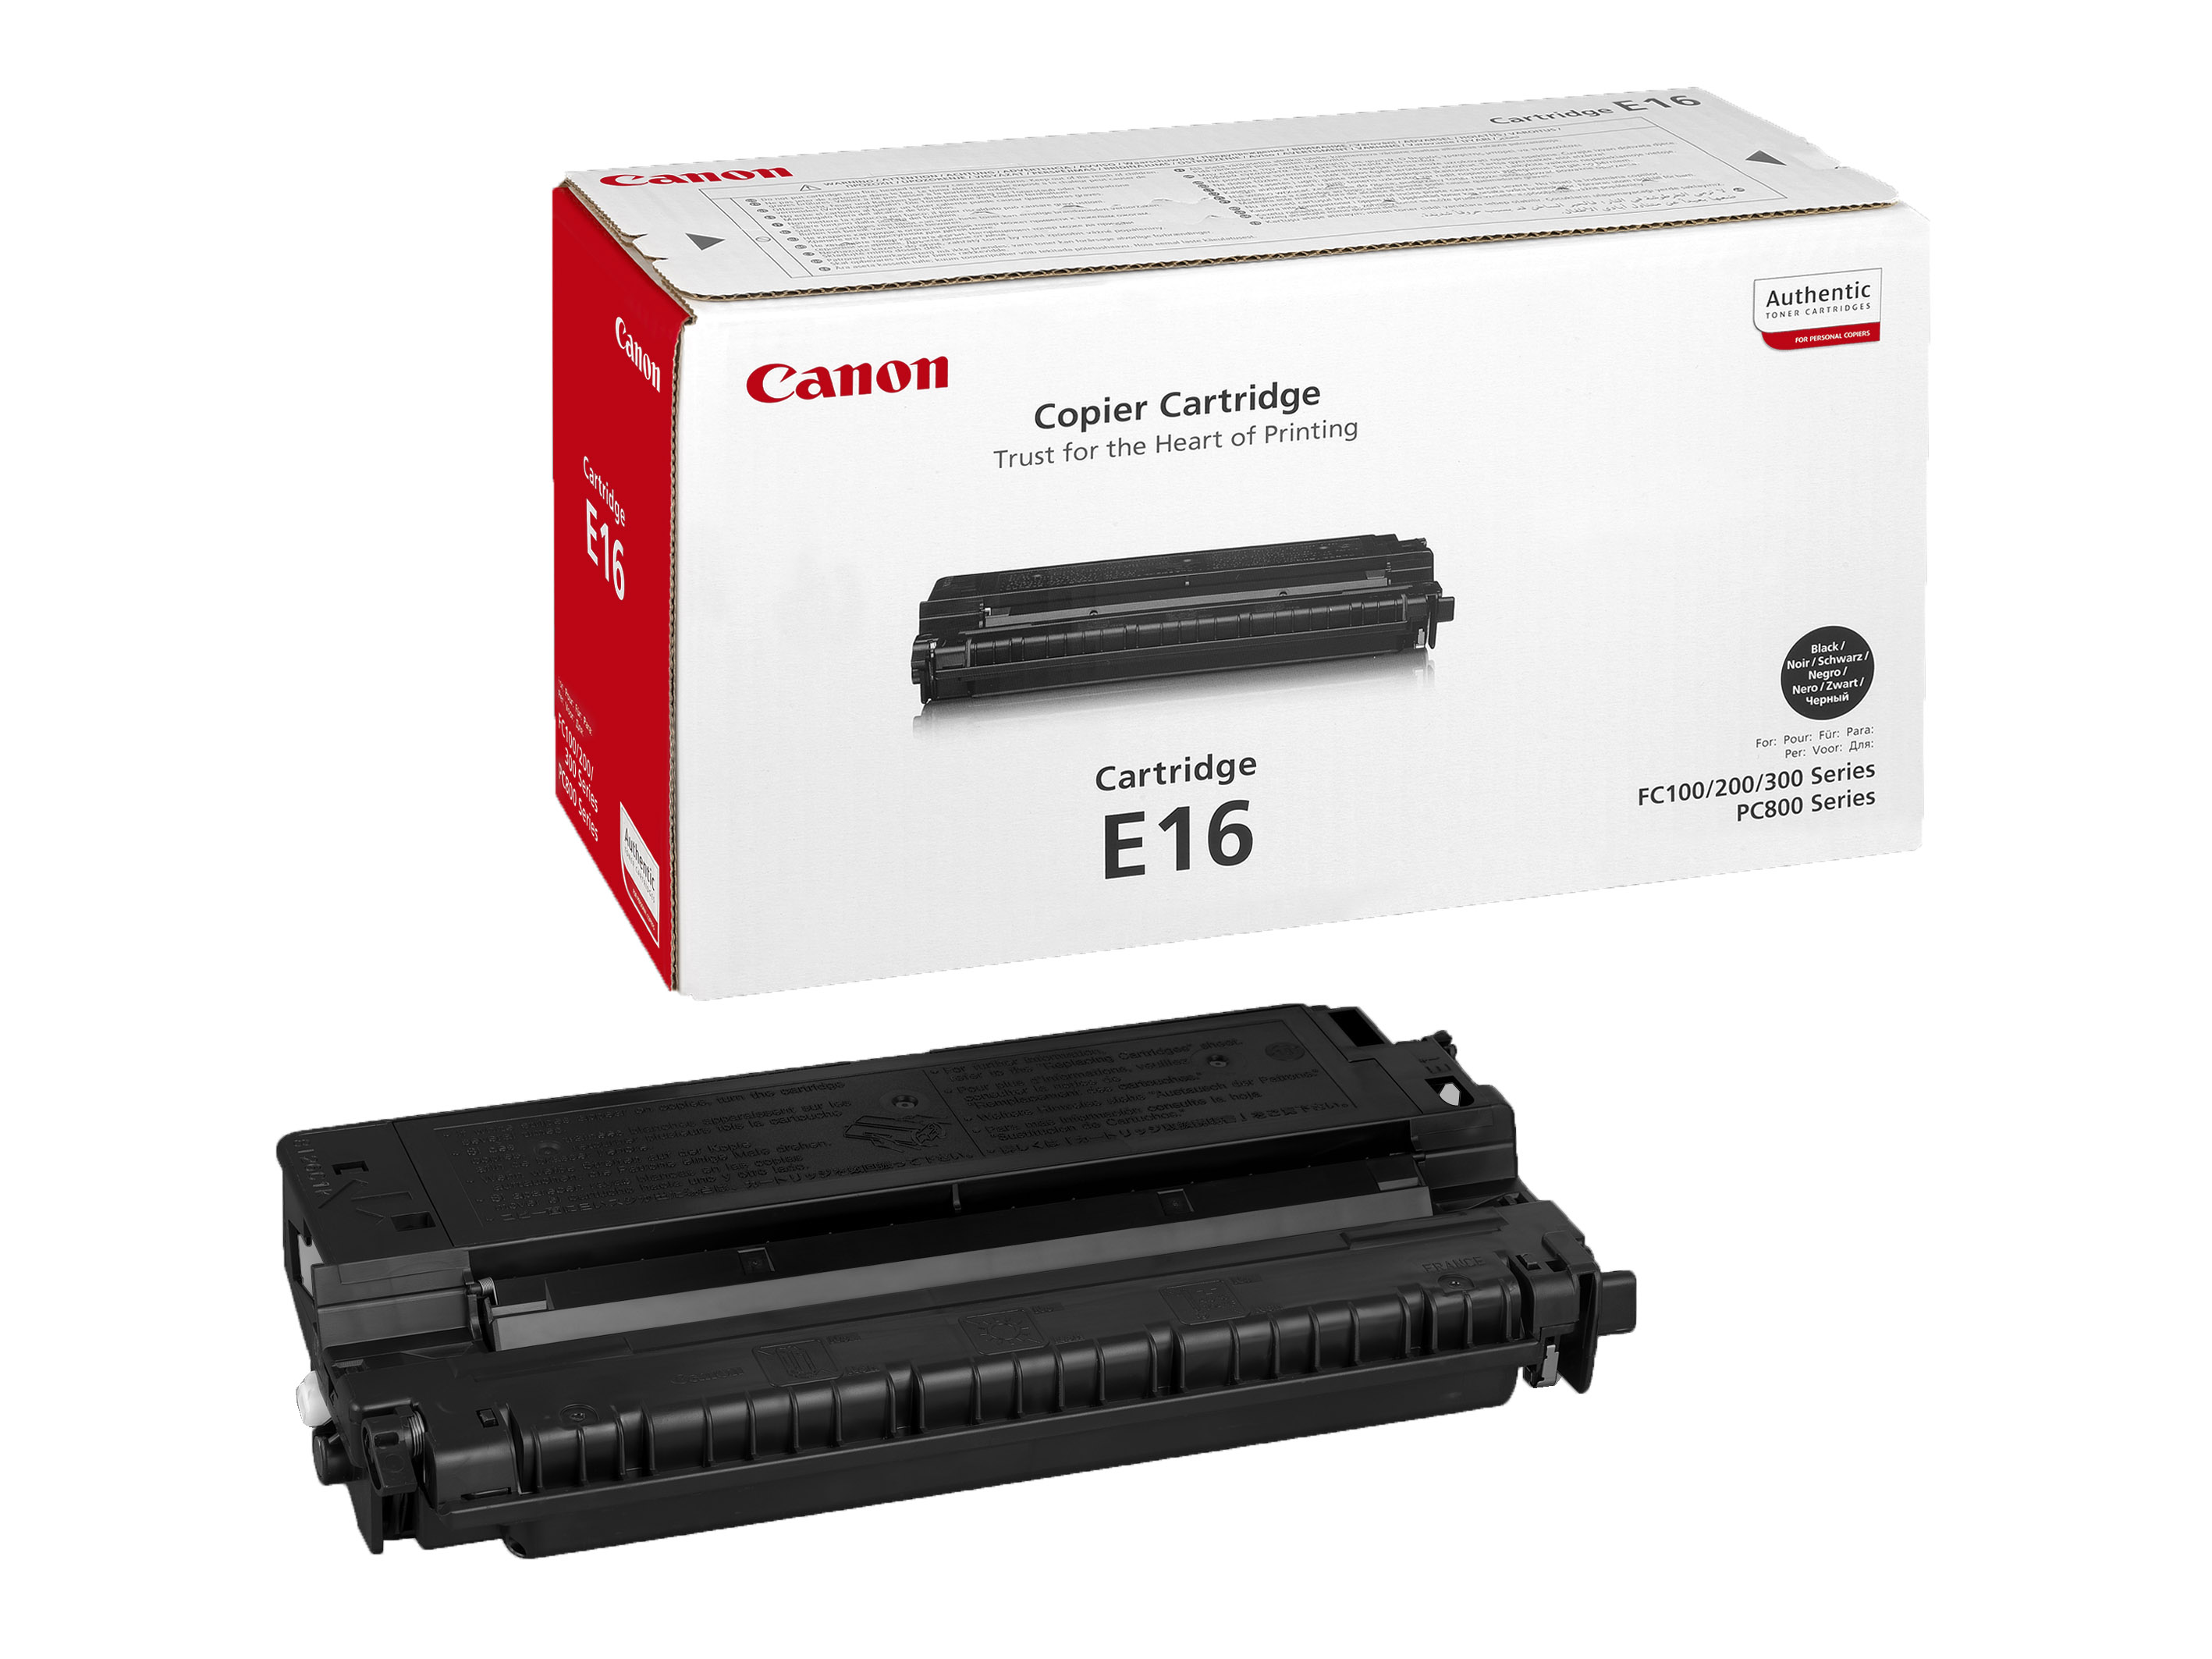 Заправка картриджа Canon E16 для FC 108, FC 128, FC 200, FC 208, FC 220, FC 228, FC 336, PC 860, PC 880, PC 890